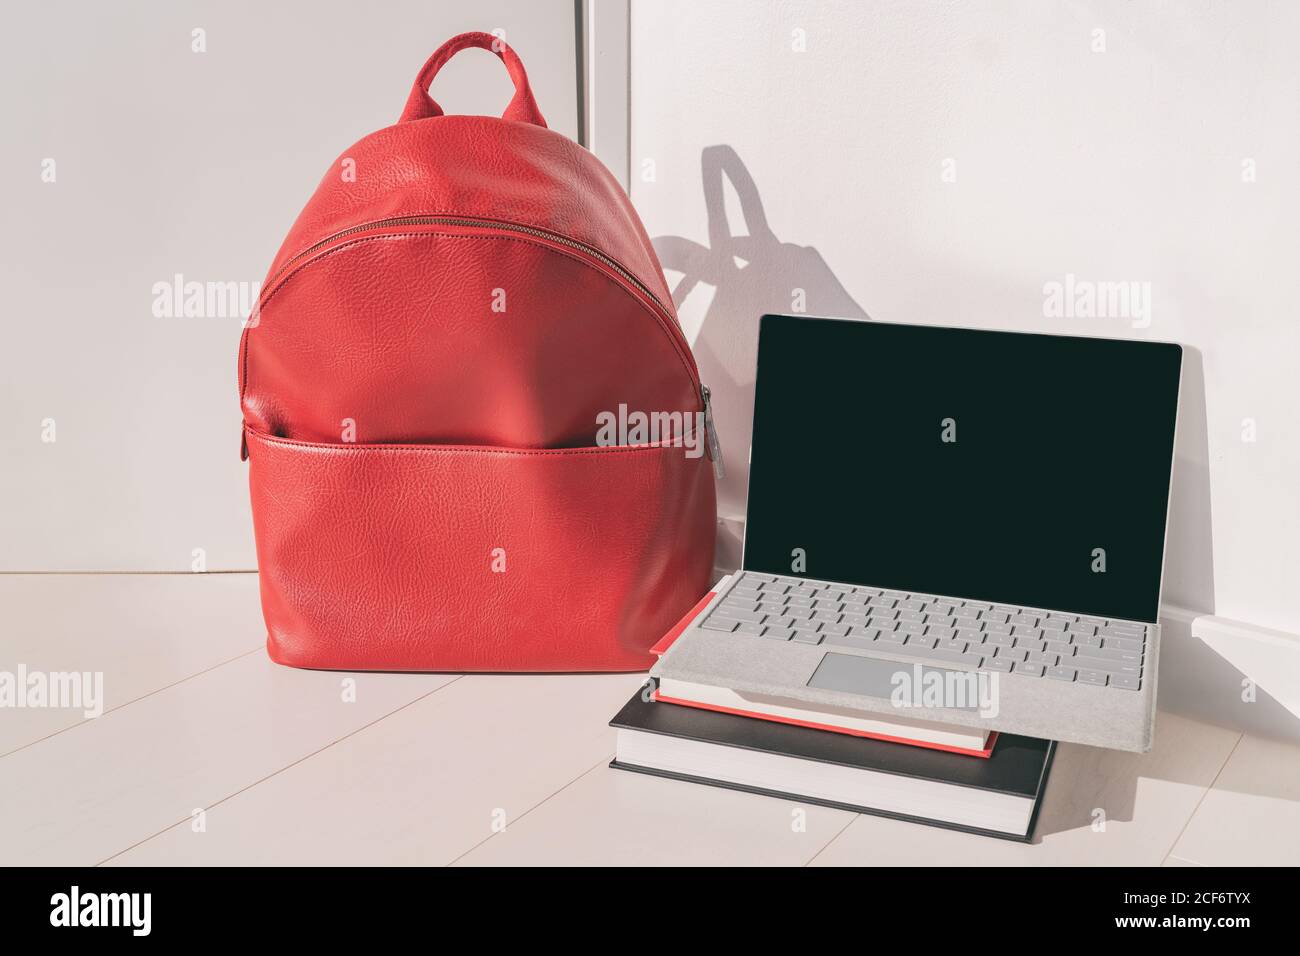 Torna a scuola classi online laptop e zaino rosso con libri di studio, studenti universitari o universitari Foto Stock